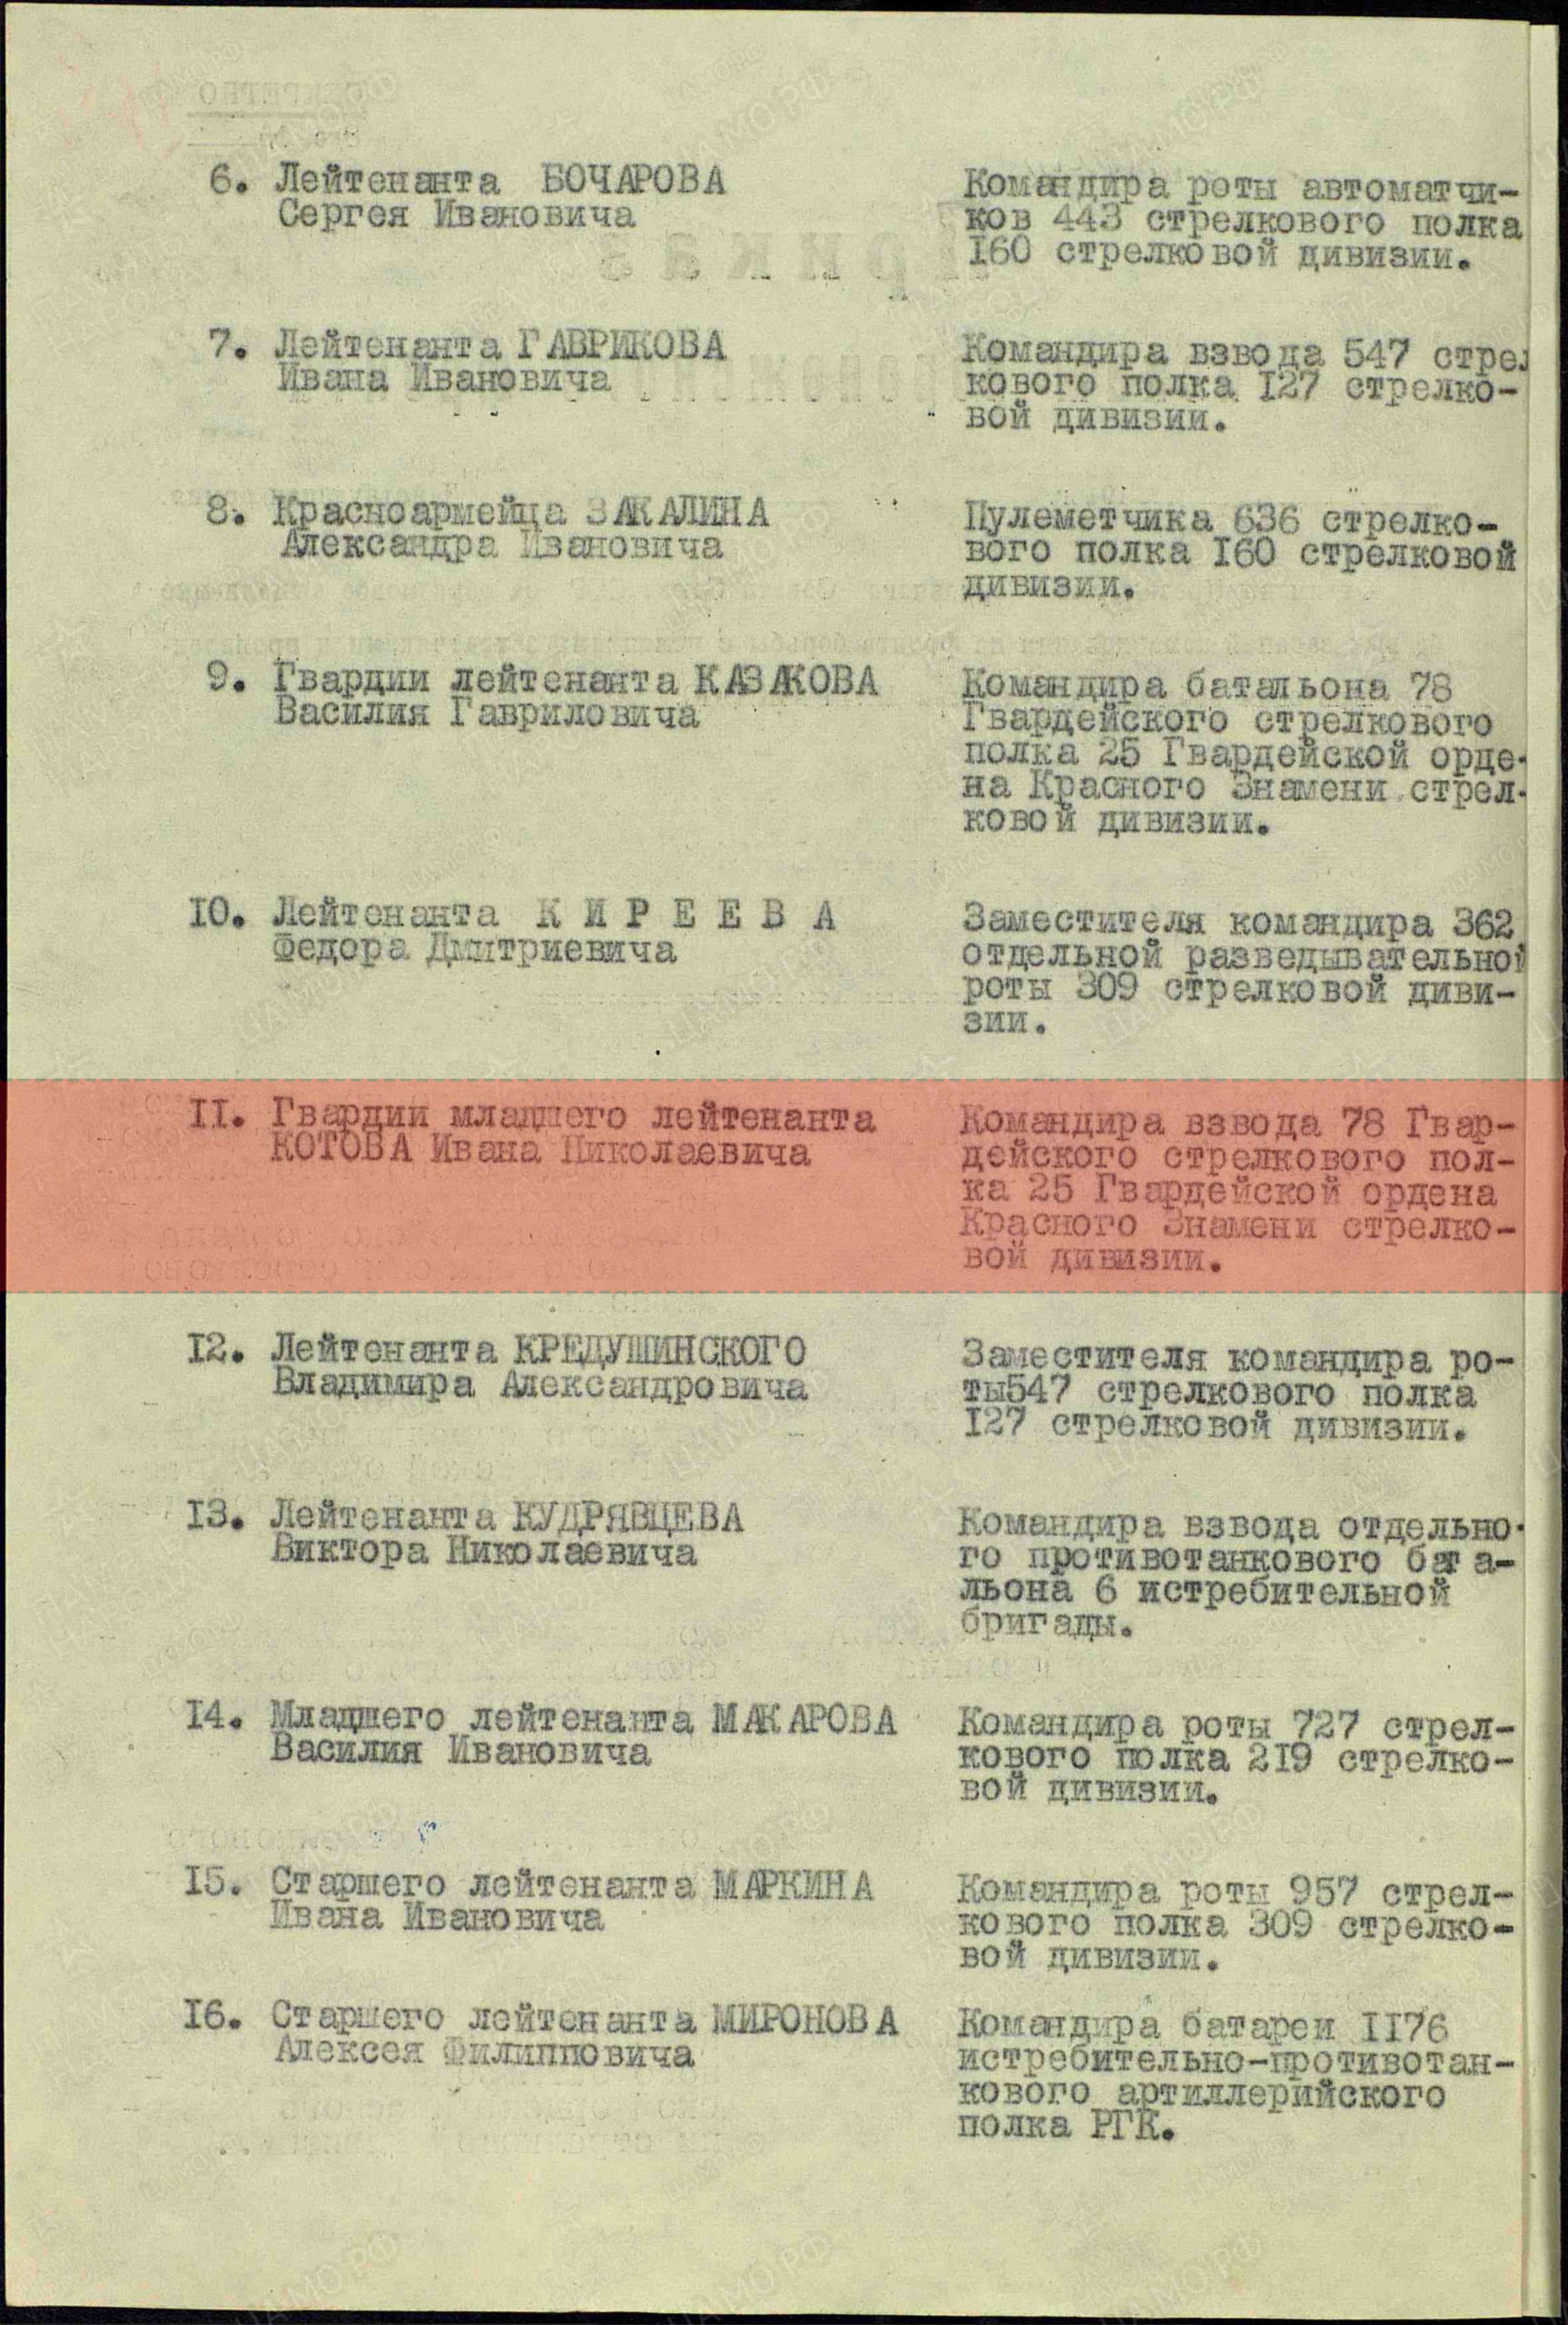 Лист приказа о награждении (строка в наградном списке). Орден Красного Знамени